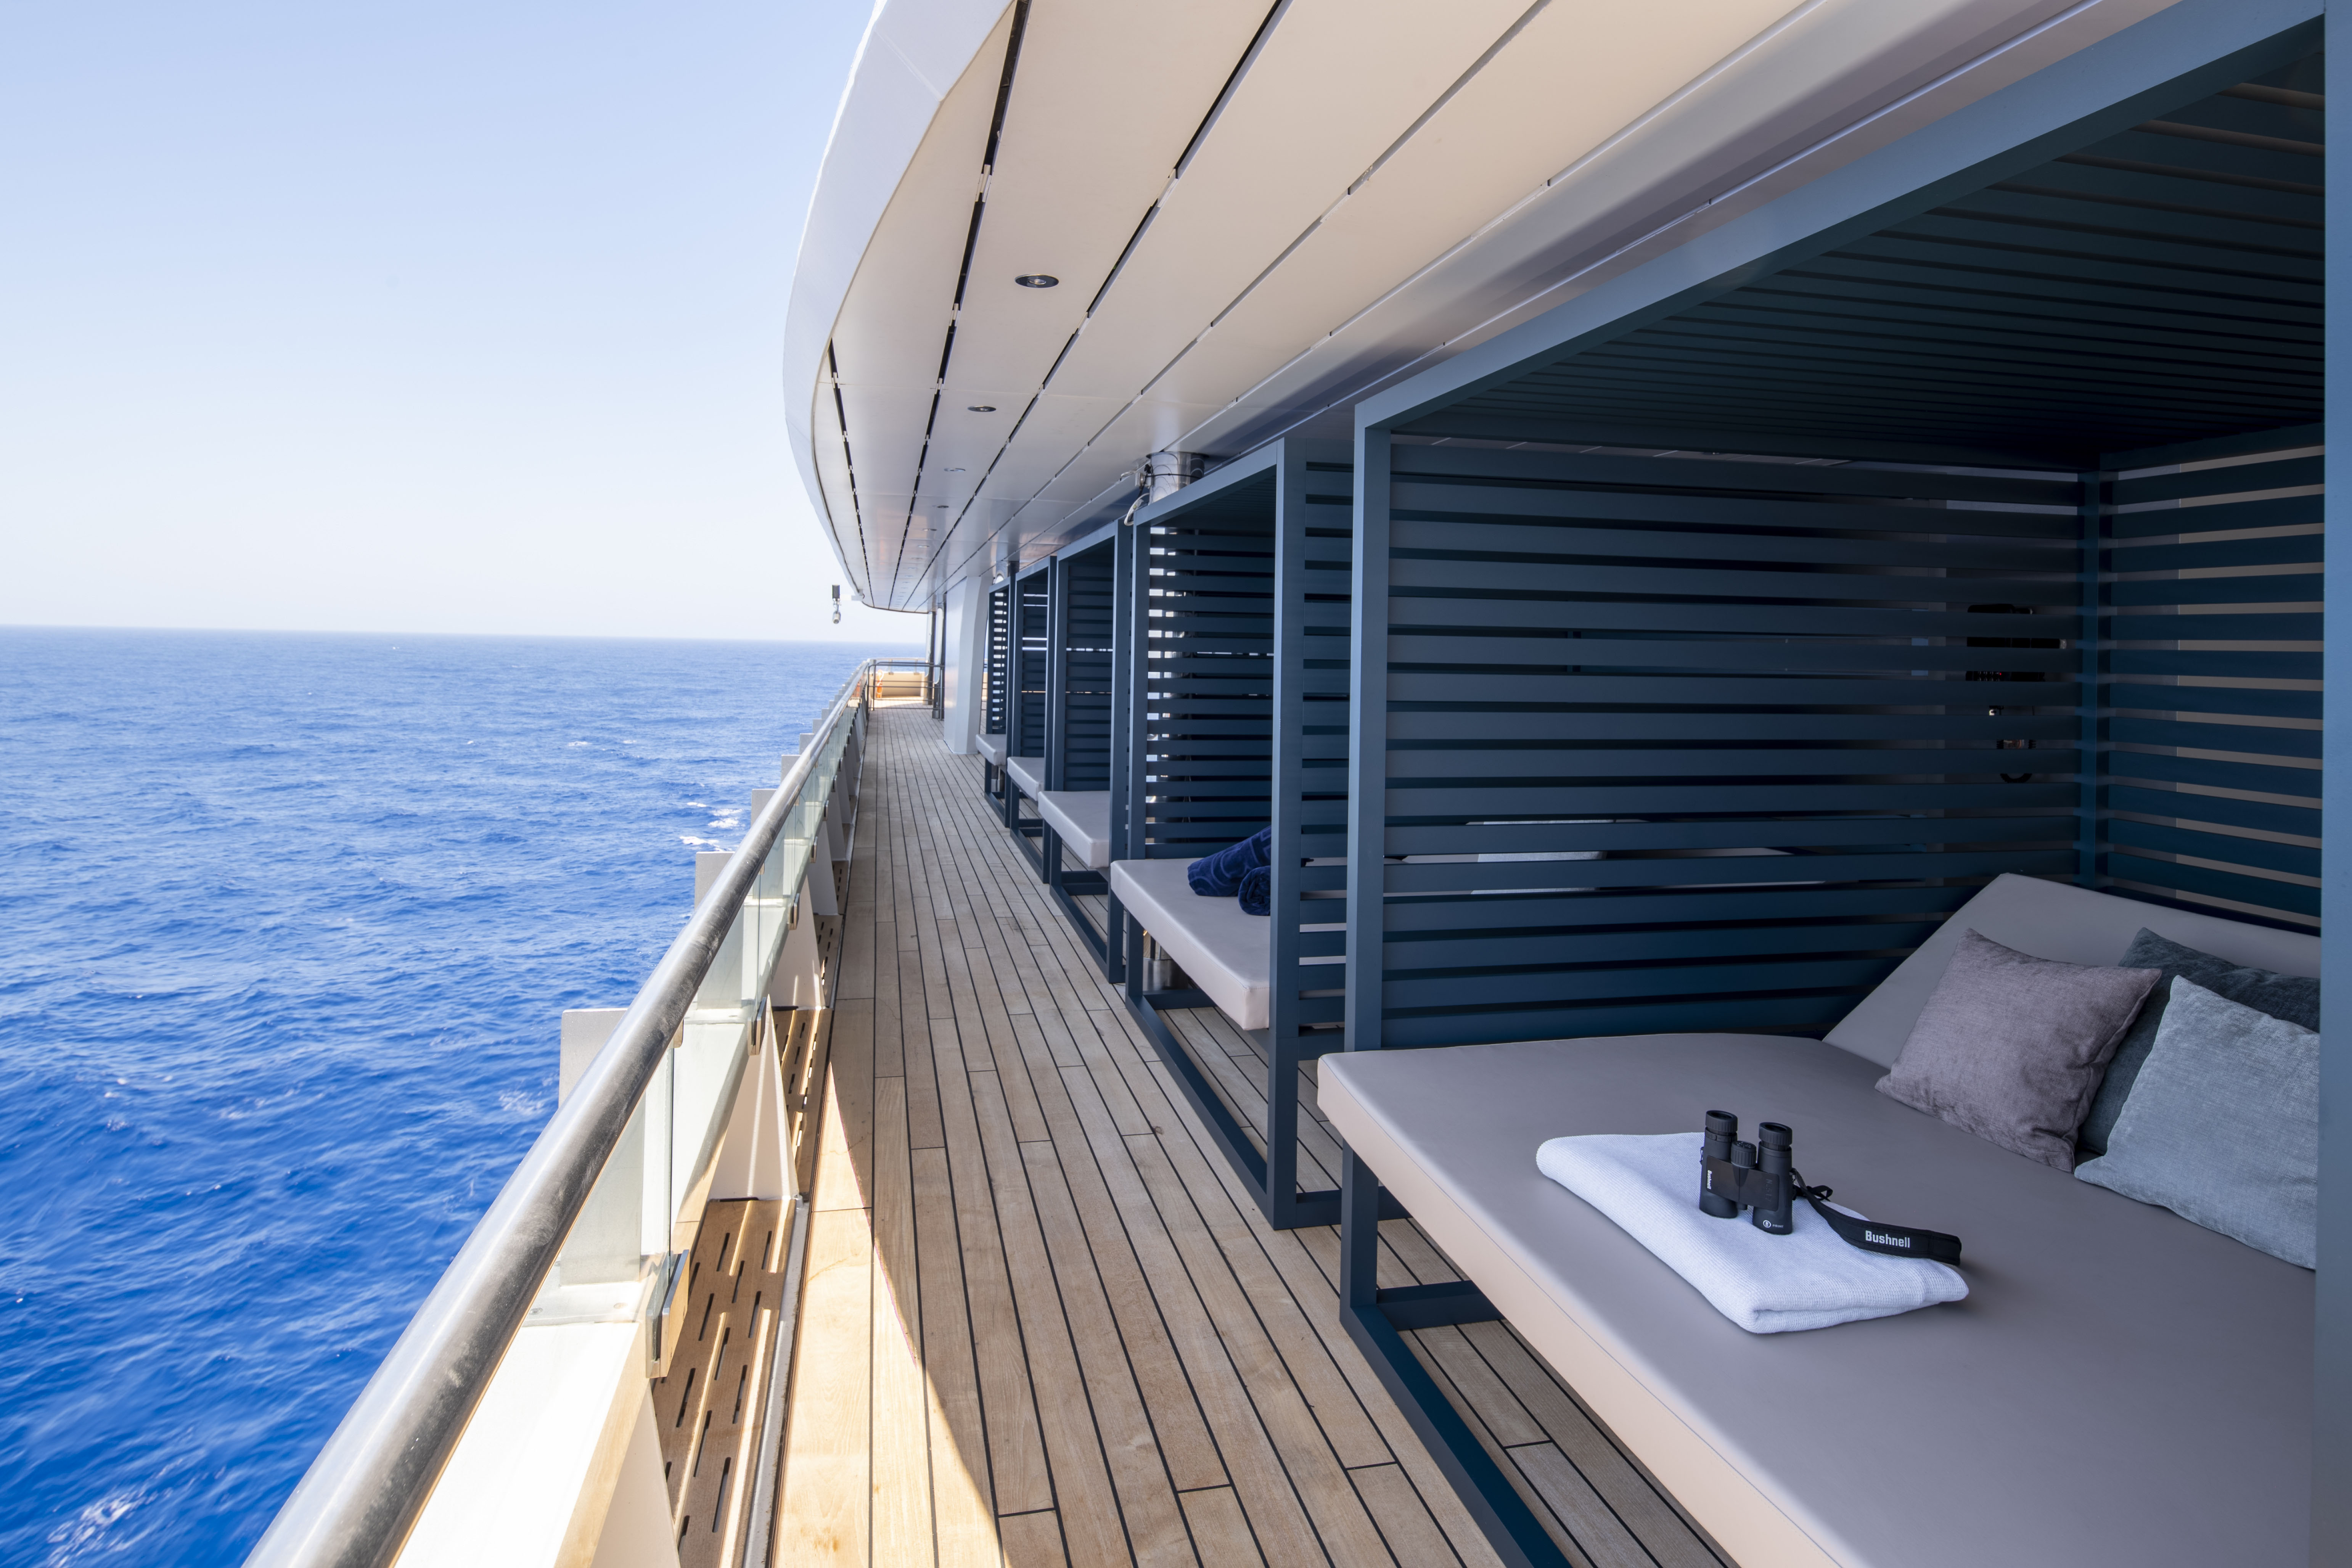 Scenic Eclipse - Deck 10, Cabana; Scenic Gruppe - Luxus-Yachtkreuzfahrten - Pressearbeit uschi liebl pr